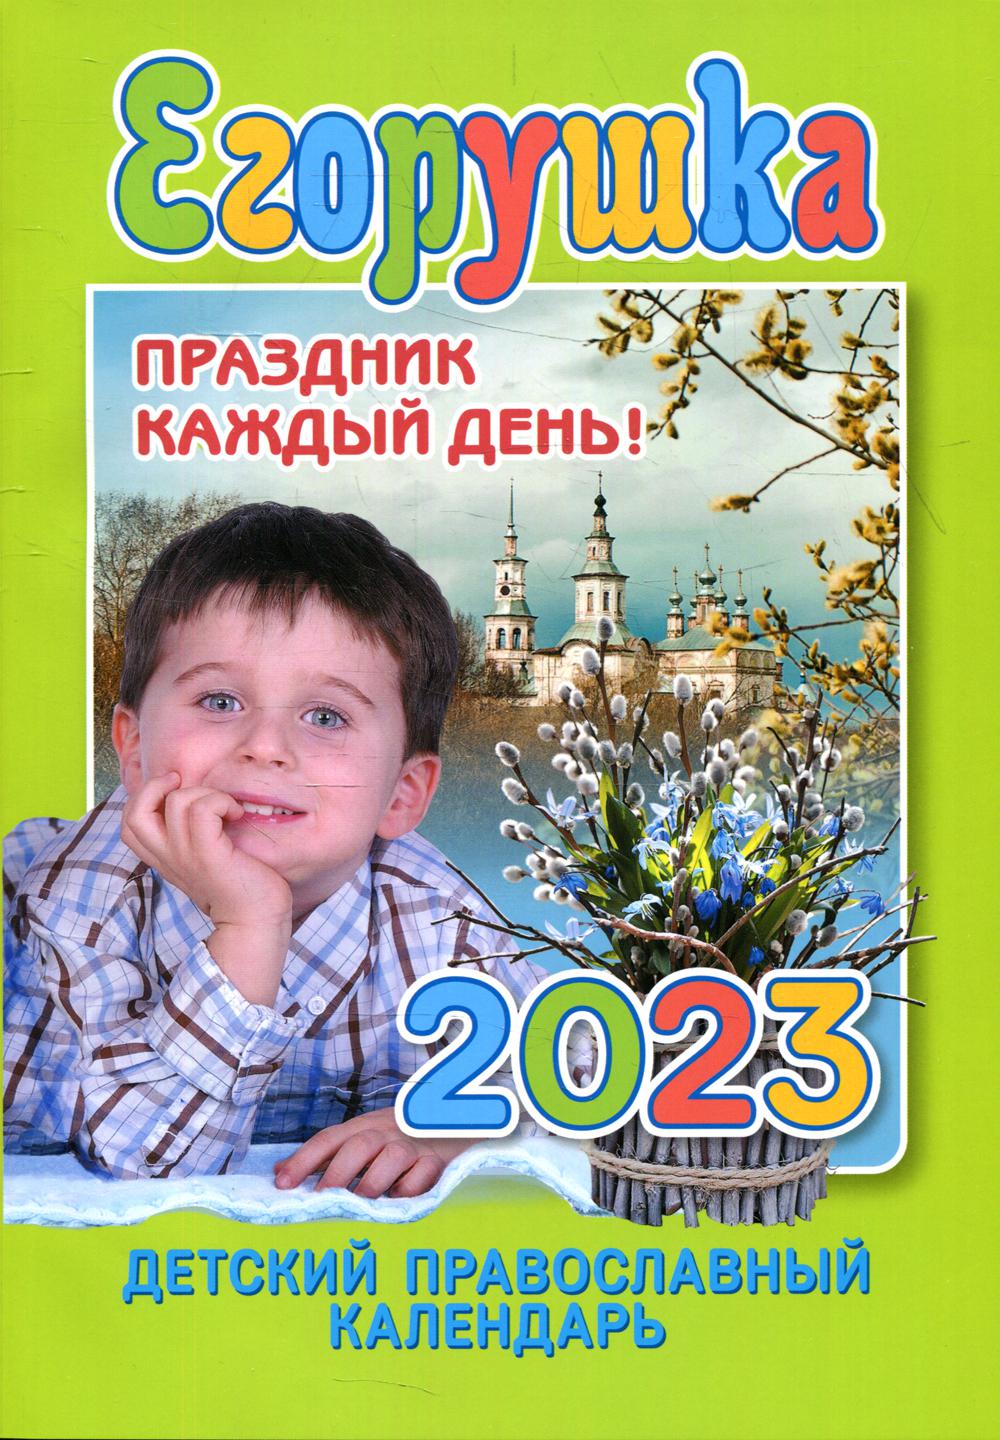 Егорушка. Праздник каждый день. Детский православный календарь на 2023 год  - купить религий мира в интернет-магазинах, цены на Мегамаркет | 21750